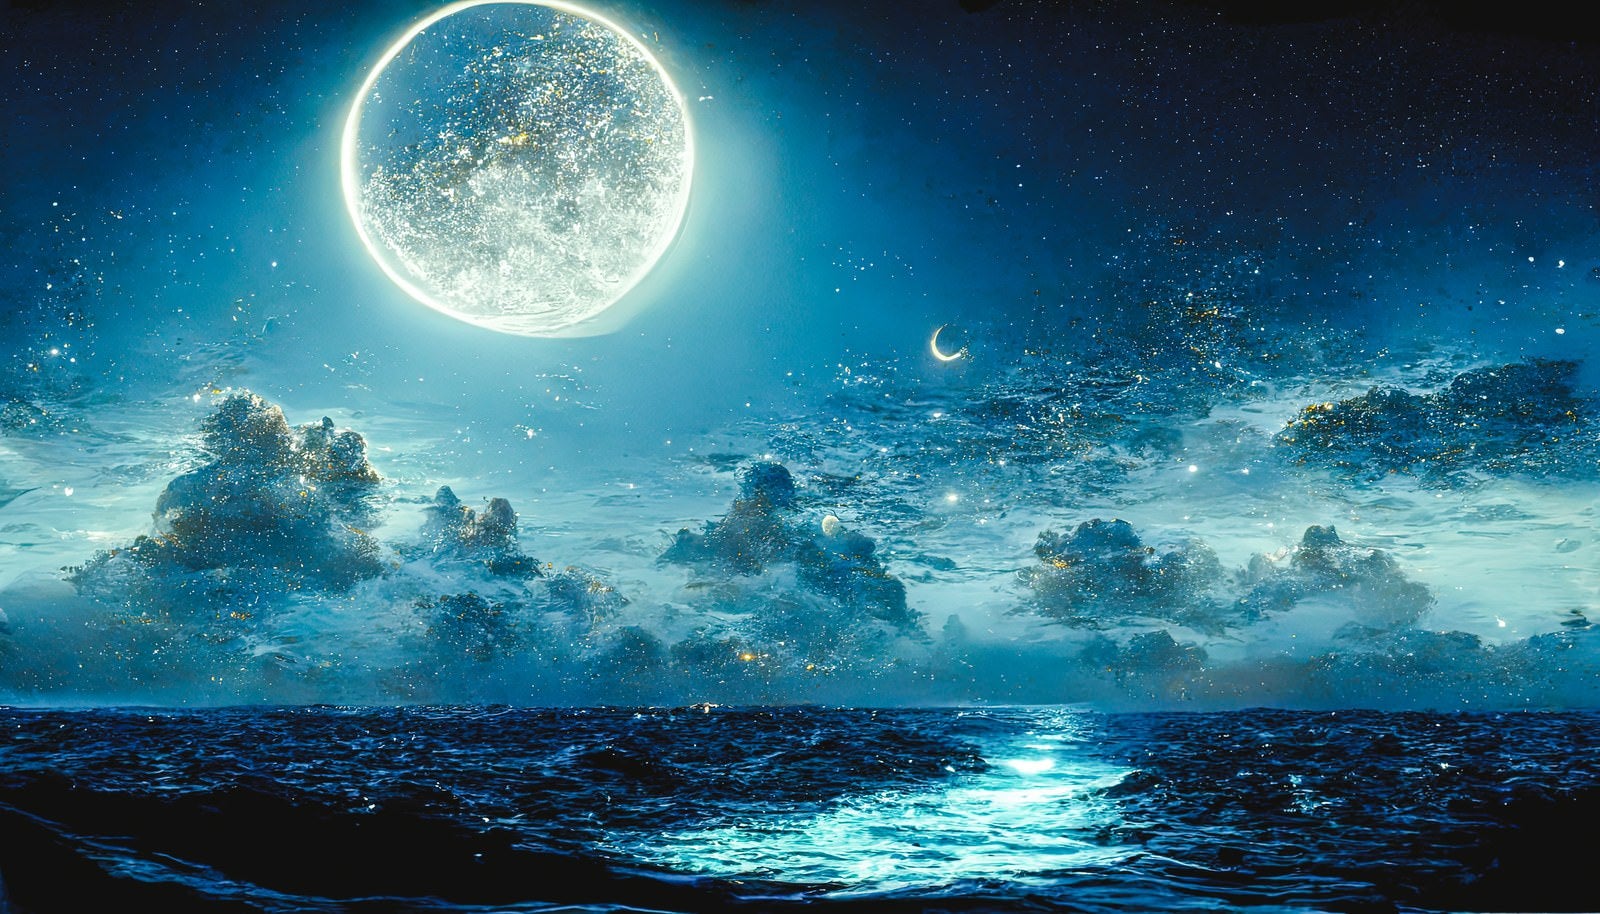 「満天の星空に浮かぶ満月」の写真